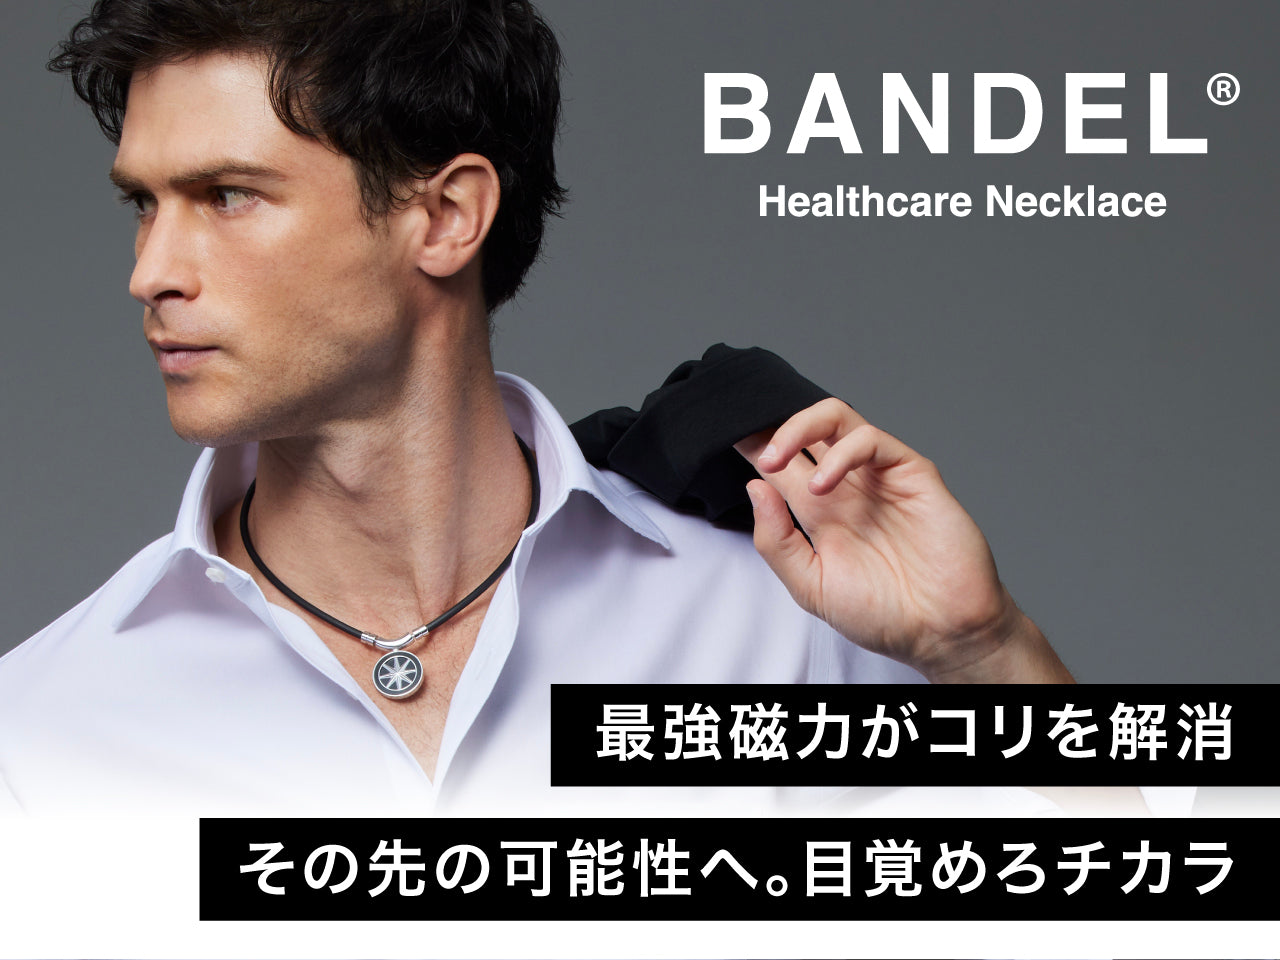 BANDEL healthcare